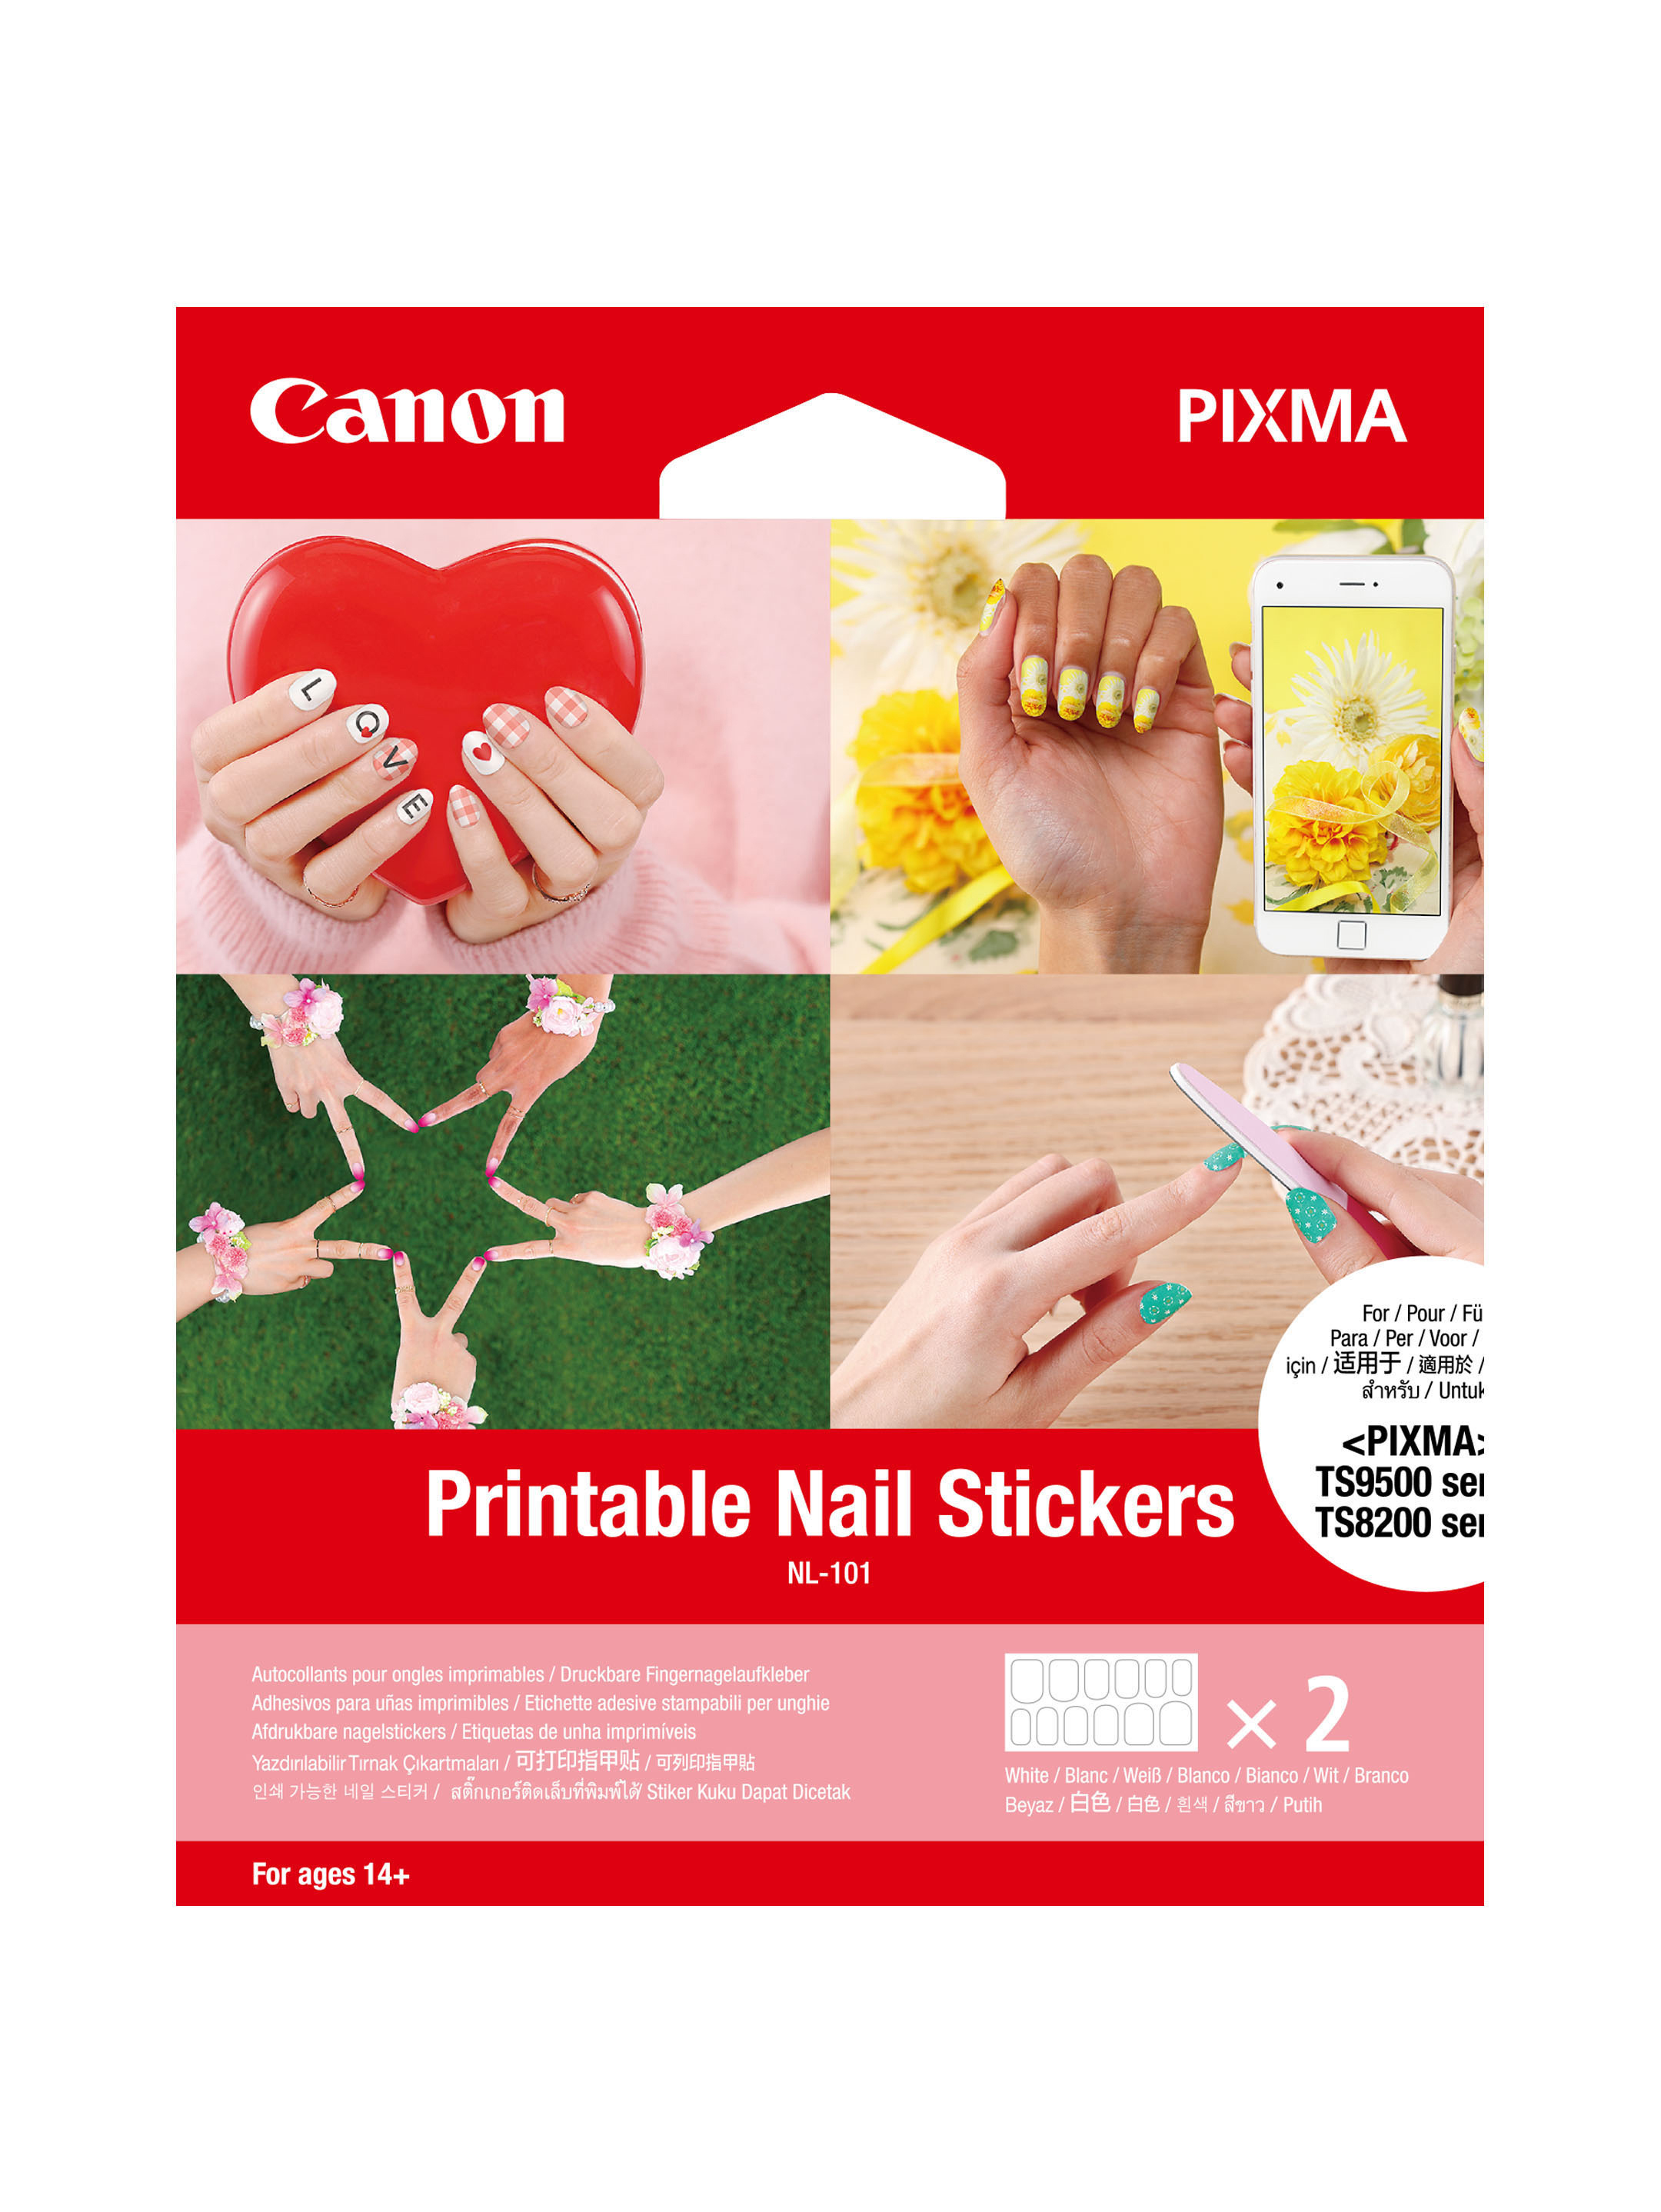 CANON NL-101 Fingernagel-Sticker 2 Sets Bedienungsanleitung Blatt) Hände pro beide Sticker Blatt), mit (1 (12 für Fingernagel-Stickern